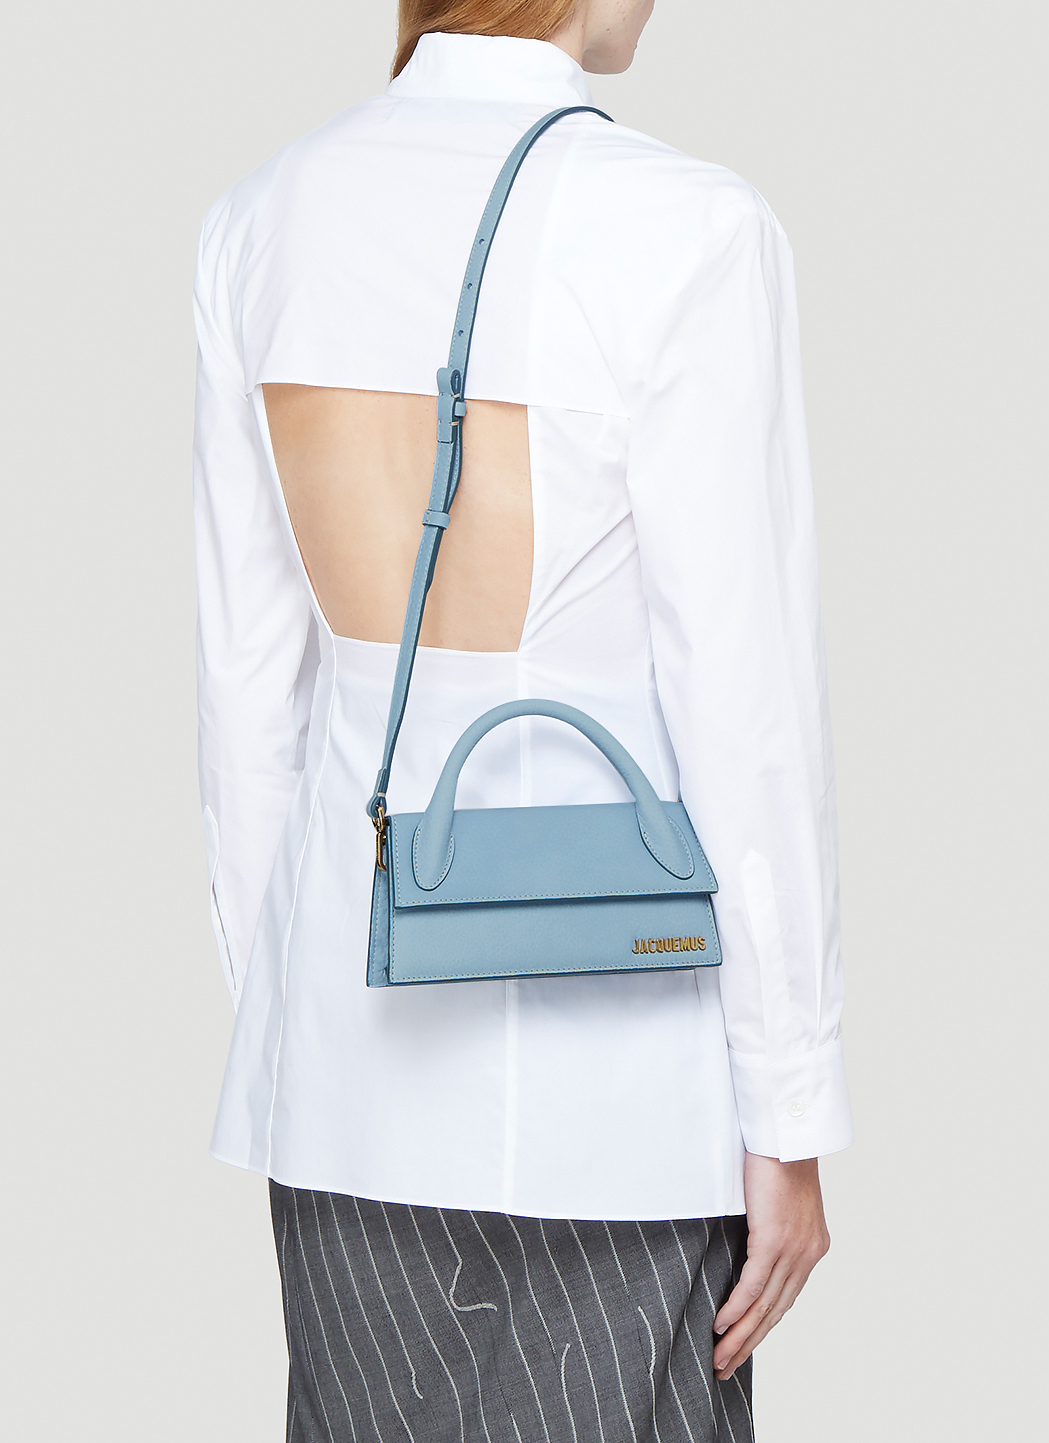 Jacquemus Le Chiquito Long Shoulder Bag | LN-CC